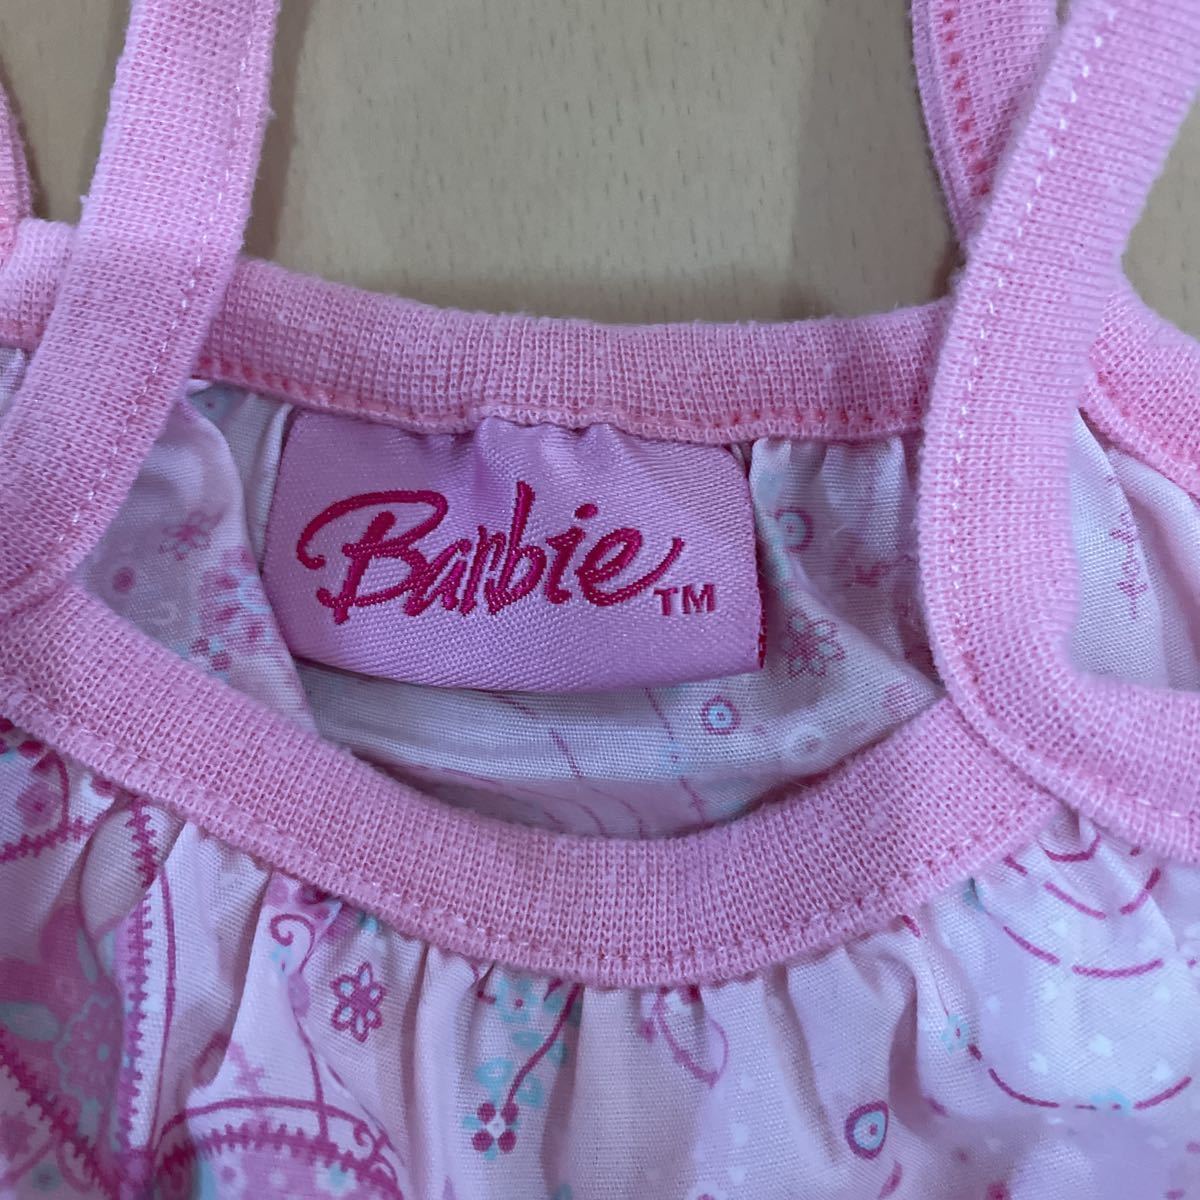 送料無料 Barbie バービー キャミソールワンピース ピンク 蝶々柄 2-3歳用 98cm 100cm 送料込みの画像6